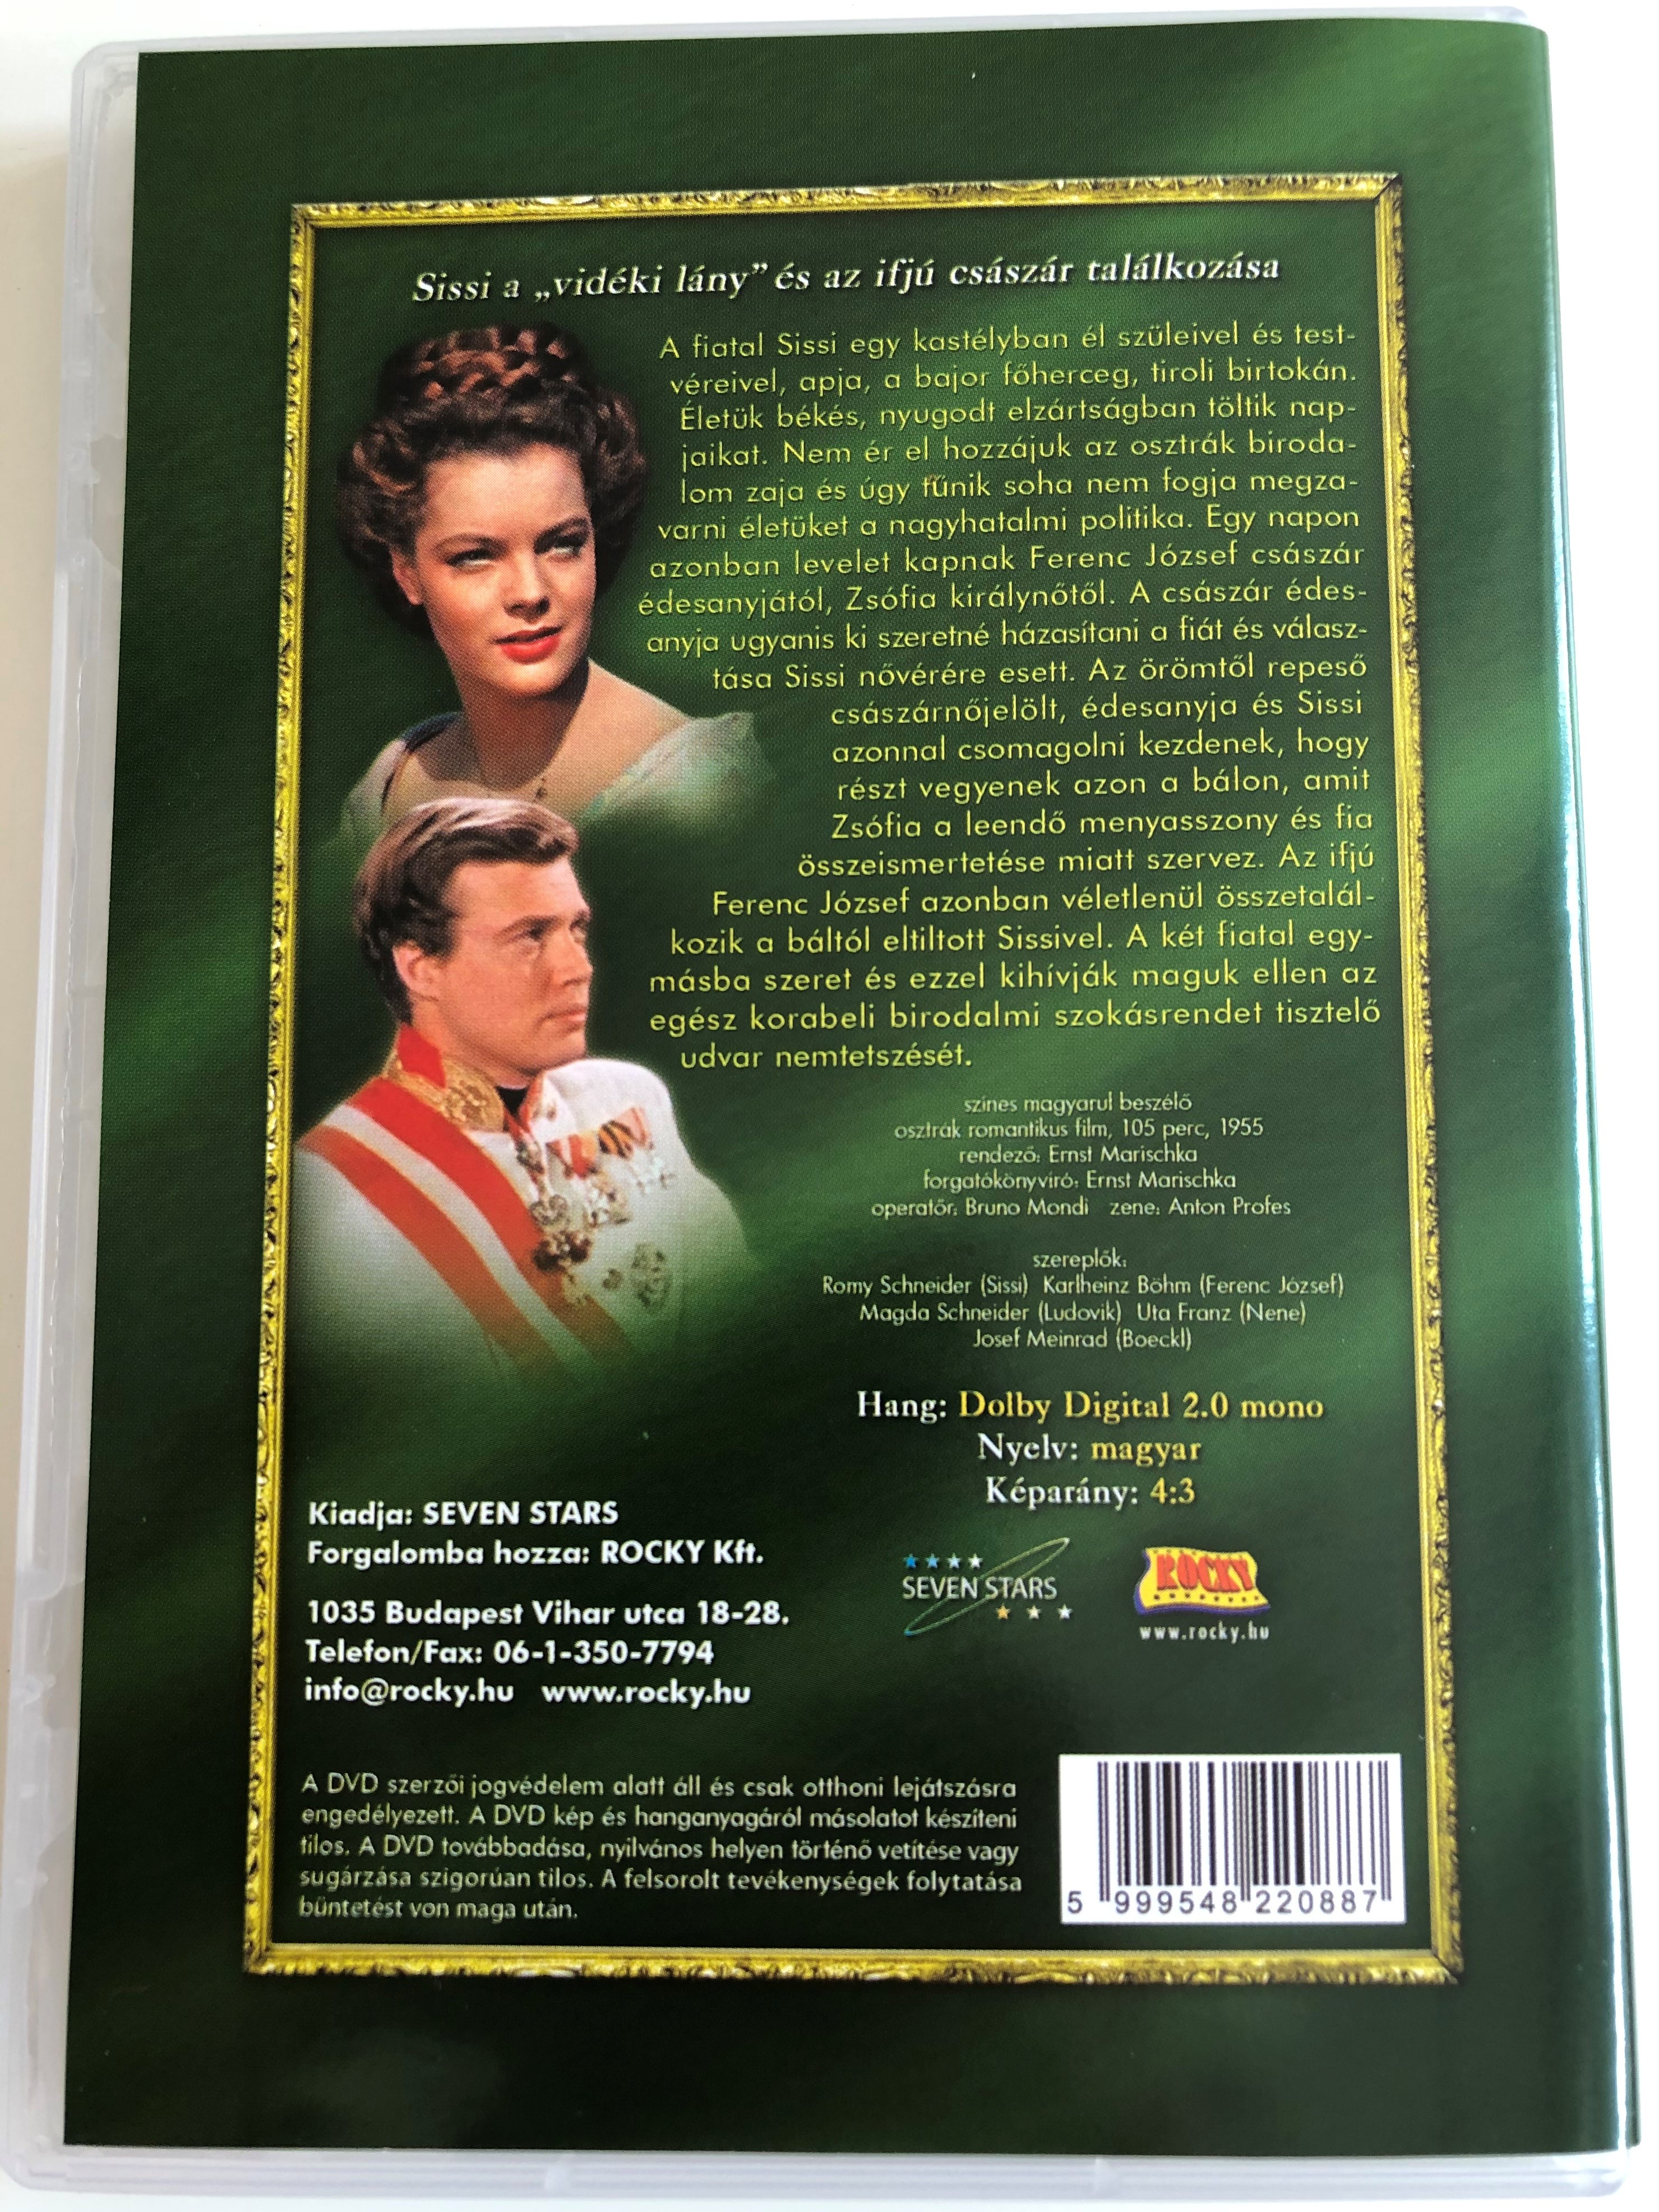 Sissi 1. (The Queen of hungarians) DVD 1955 Sissi 1. / Directed by Ernst  Marischka / Starring: Romy Schneider, Karlheinz Böhm, Magda Schneider, Uta  Franz, Gustav Knuth, Josef Meinrad, Vilma Degischer - bibleinmylanguage